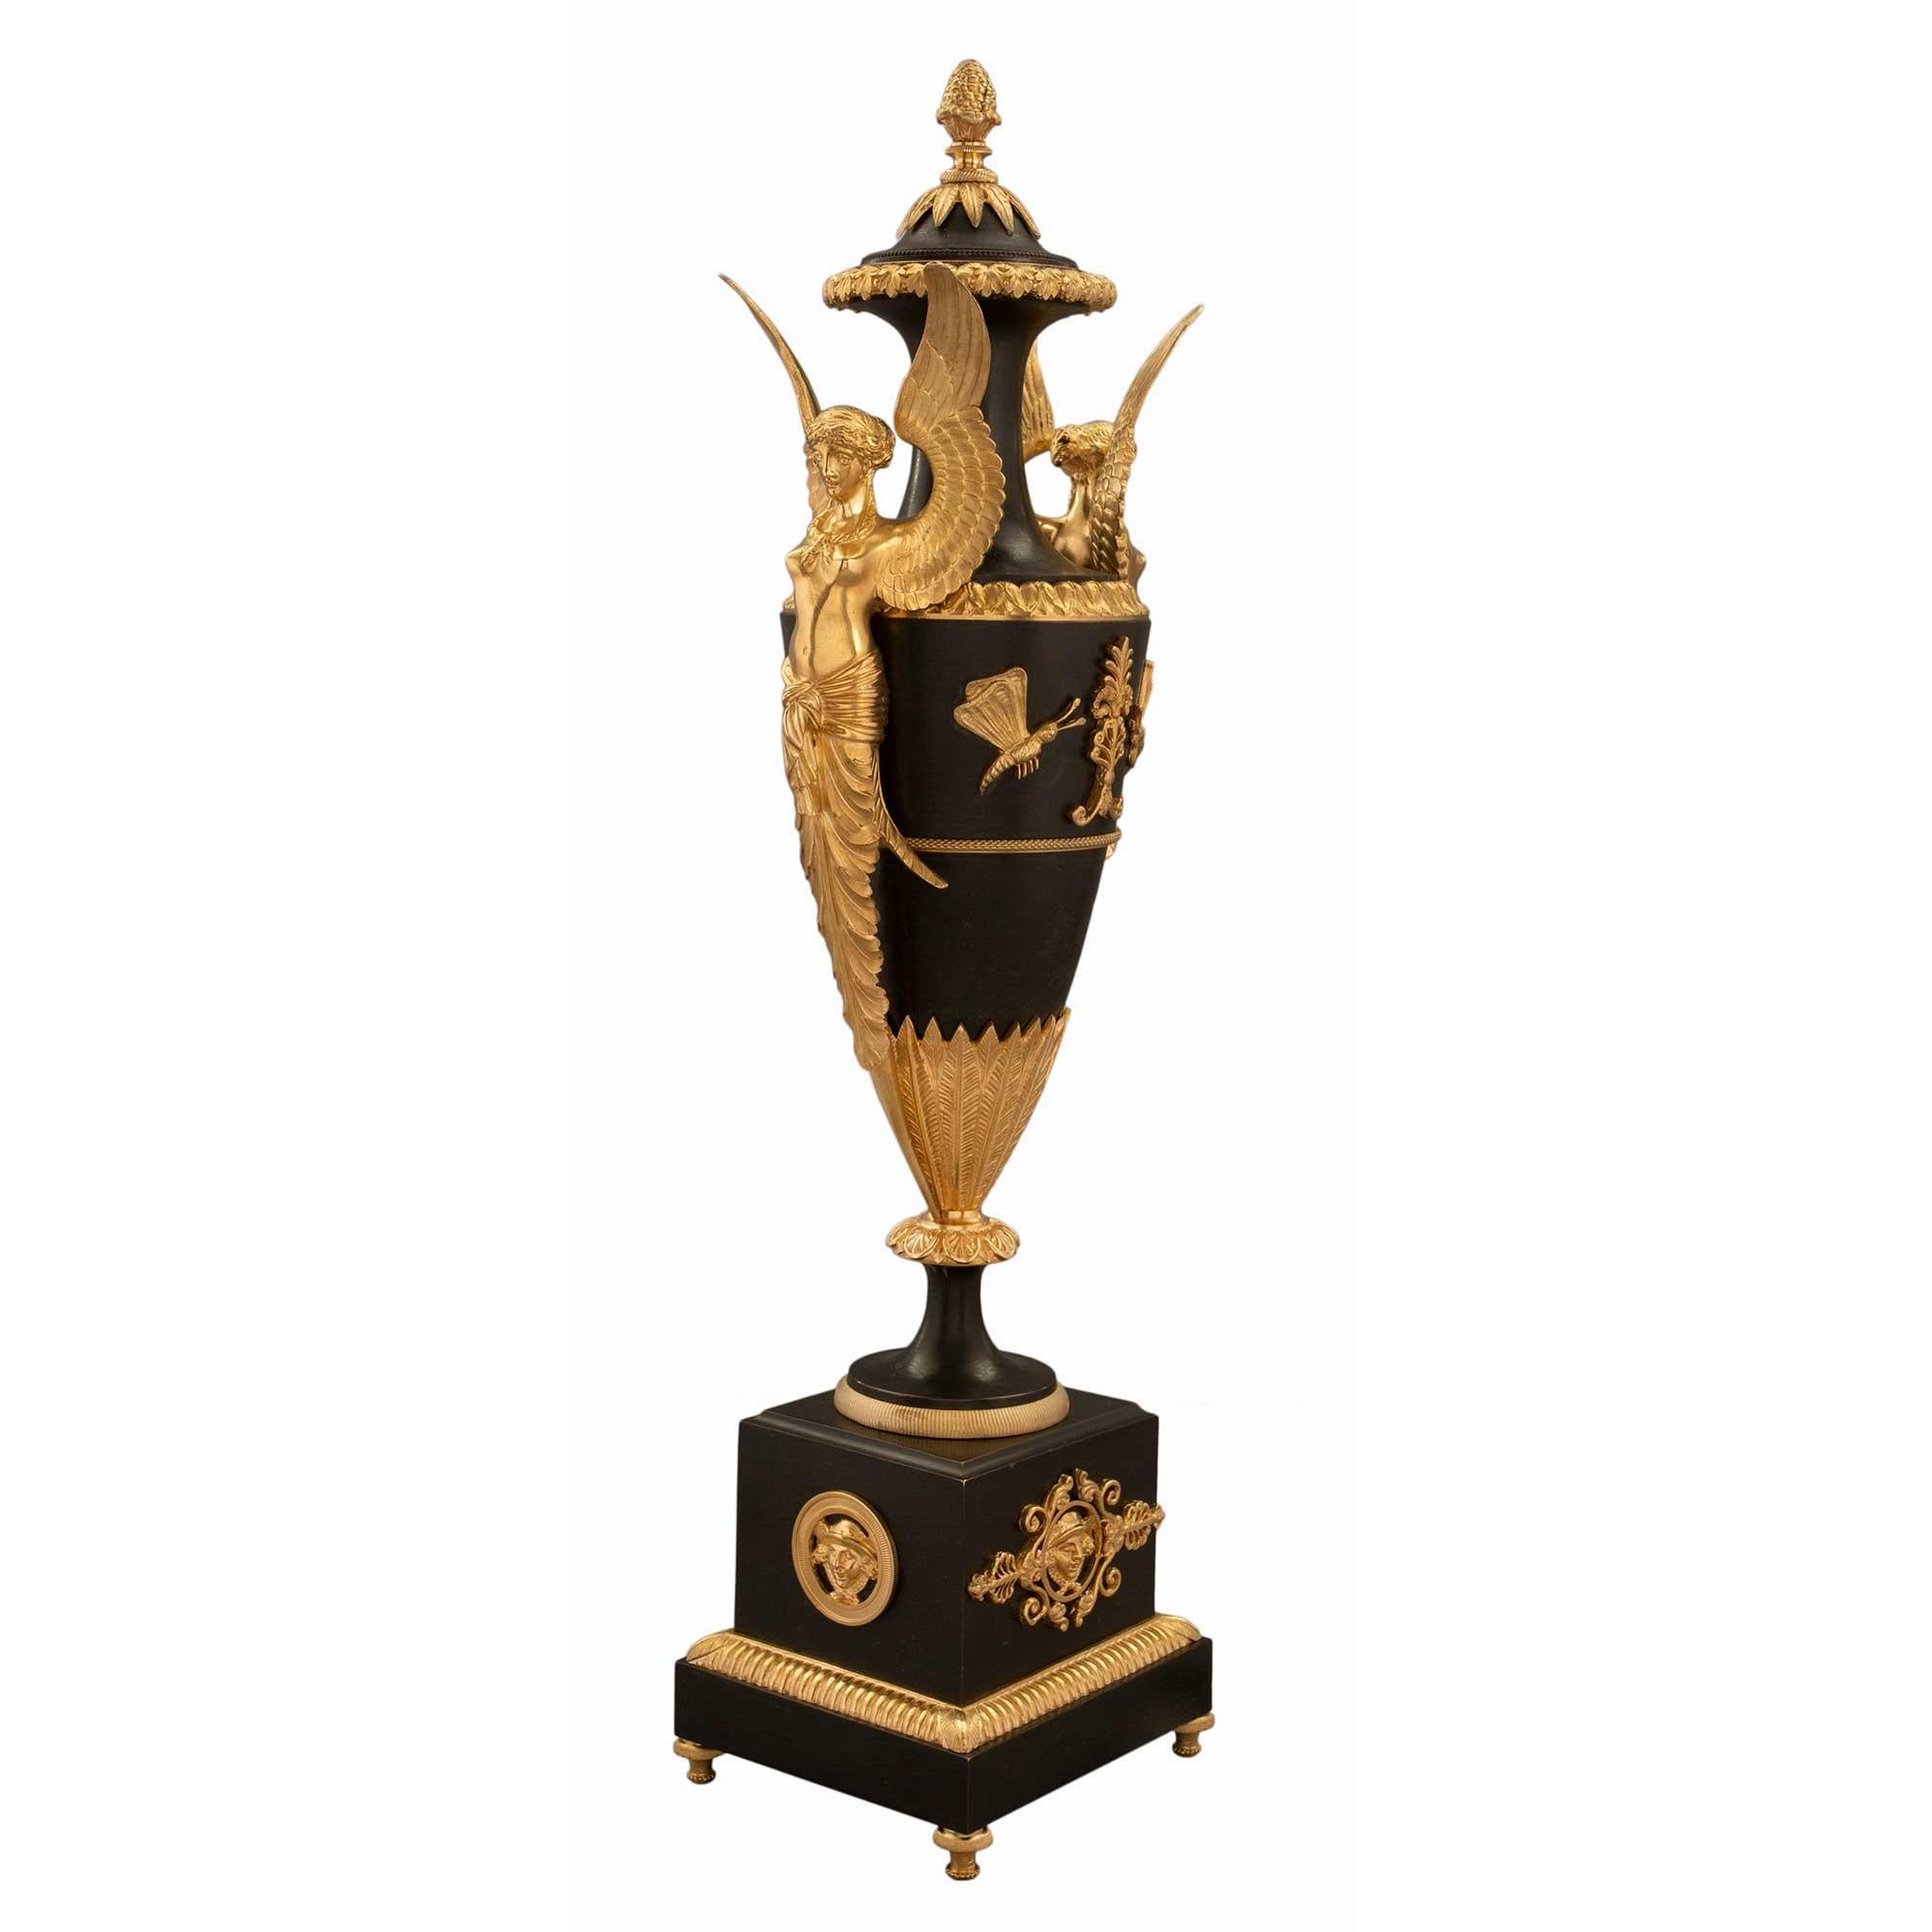 Une paire sensationnelle d'urnes françaises du début du XIXe siècle, de style Premier Empire, en bronze patiné et bronze doré, attribuée à Claude Galle. Chaque urne est surélevée par une base carrée en bronze patiné, dotée d'élégants pieds en forme